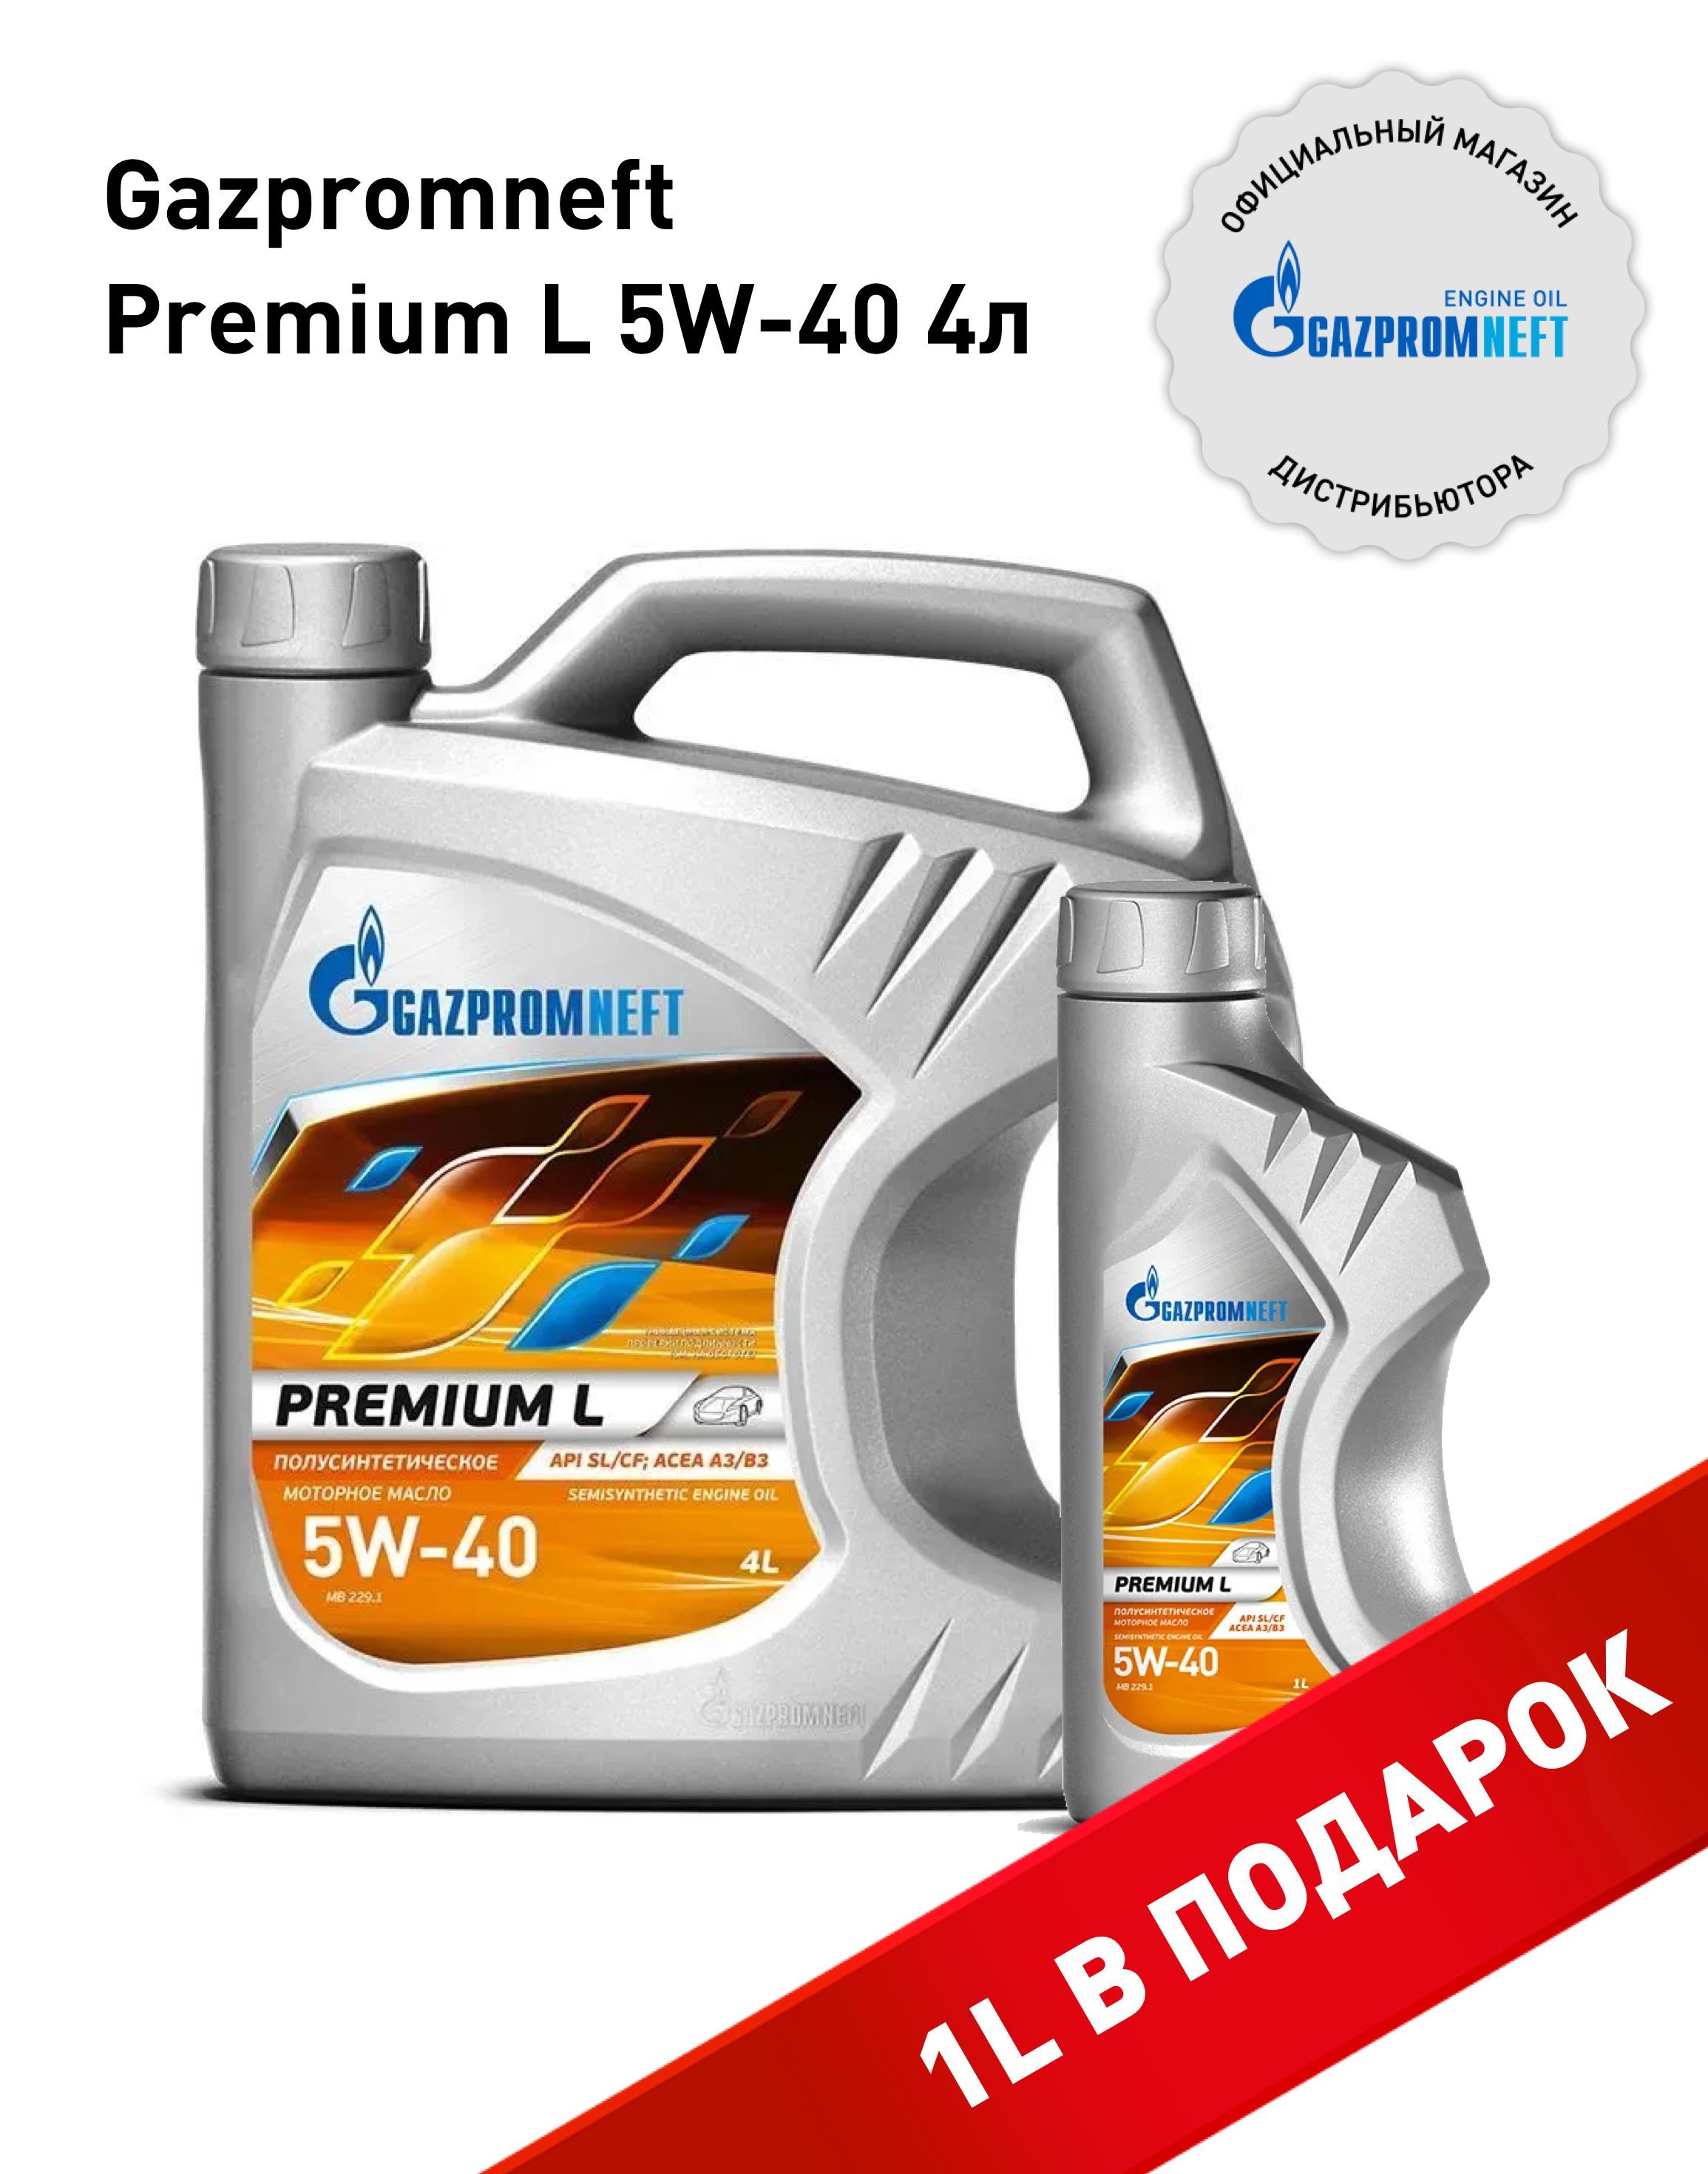 GazpromneftPremiumL5W-40,Масломоторное,Полусинтетическое,4л